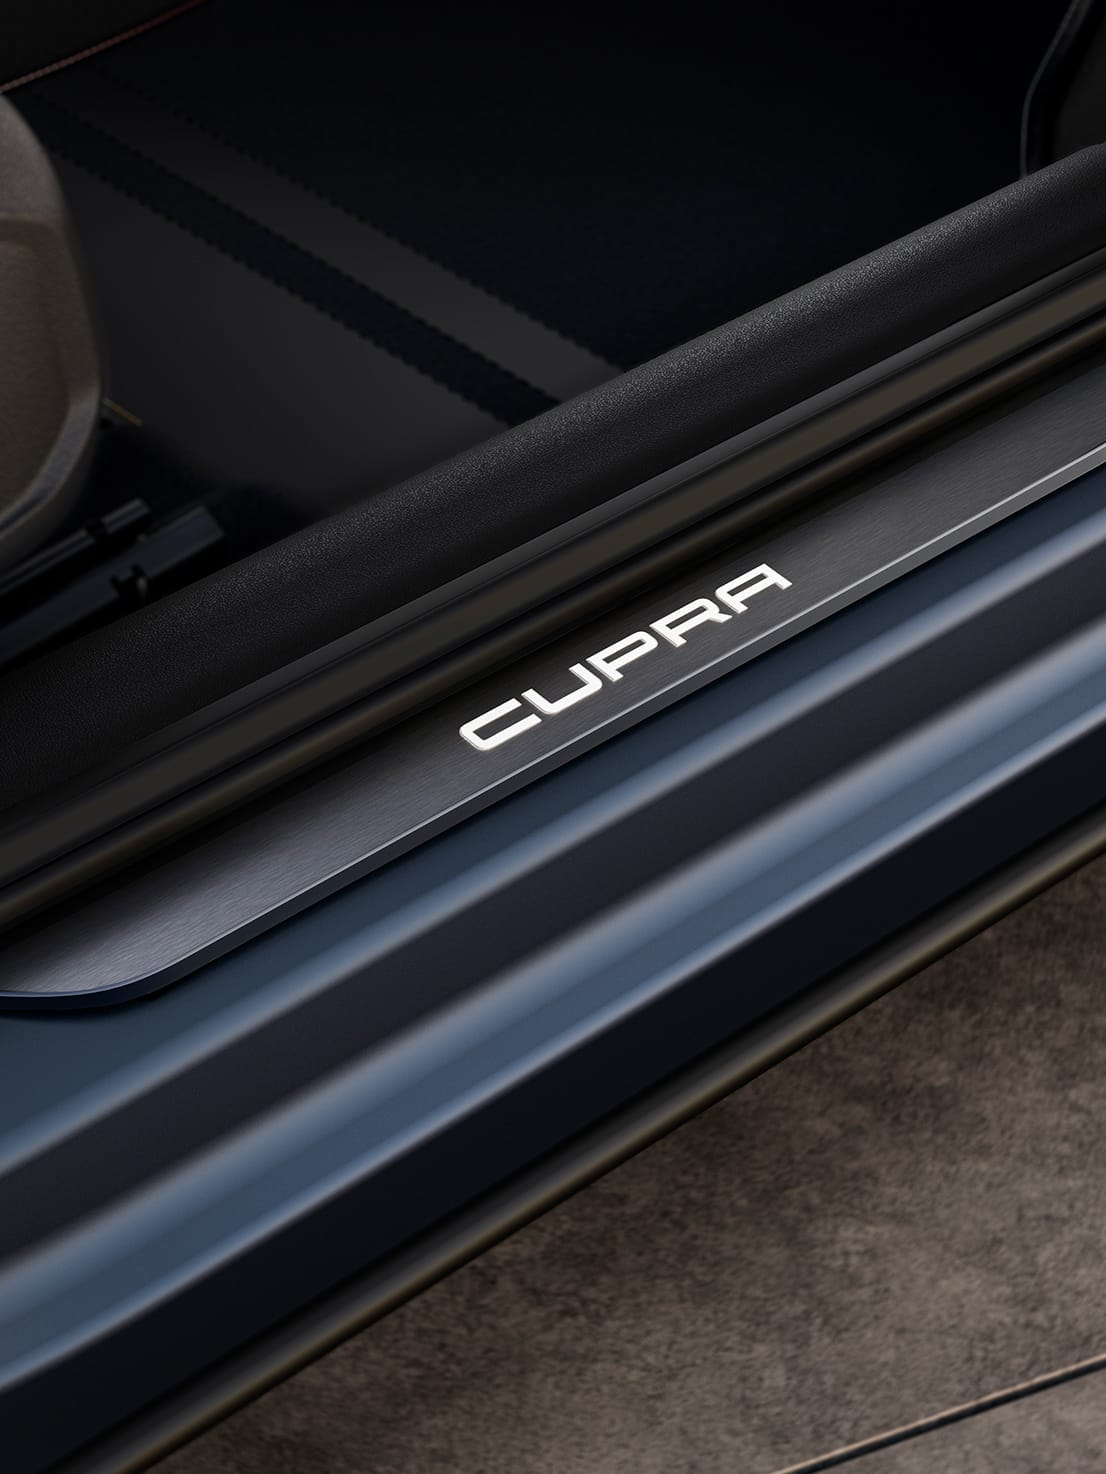 nouveau SUV compact cupra formentor avec détail cupra éclairé sur les appuis de porte.